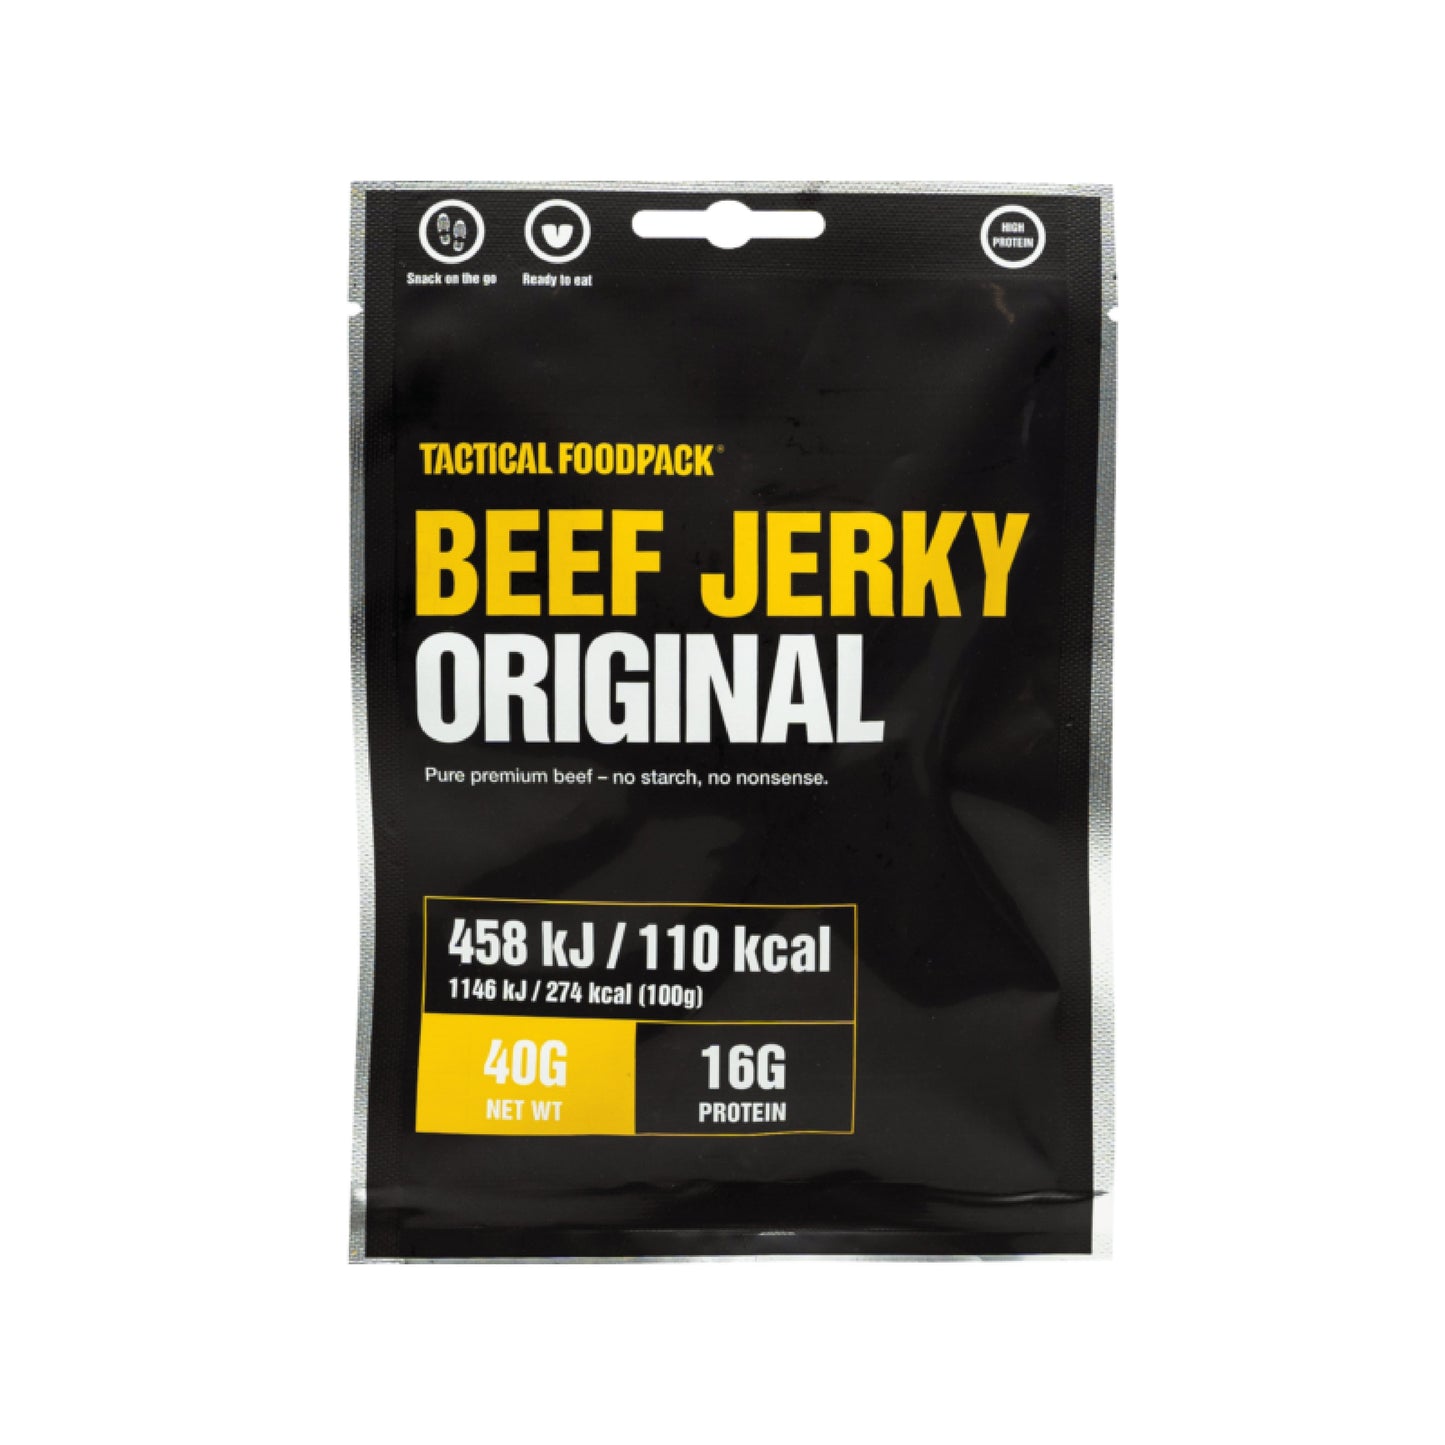 TACTICAL FOODPACK® Beef Jerky Original 40g